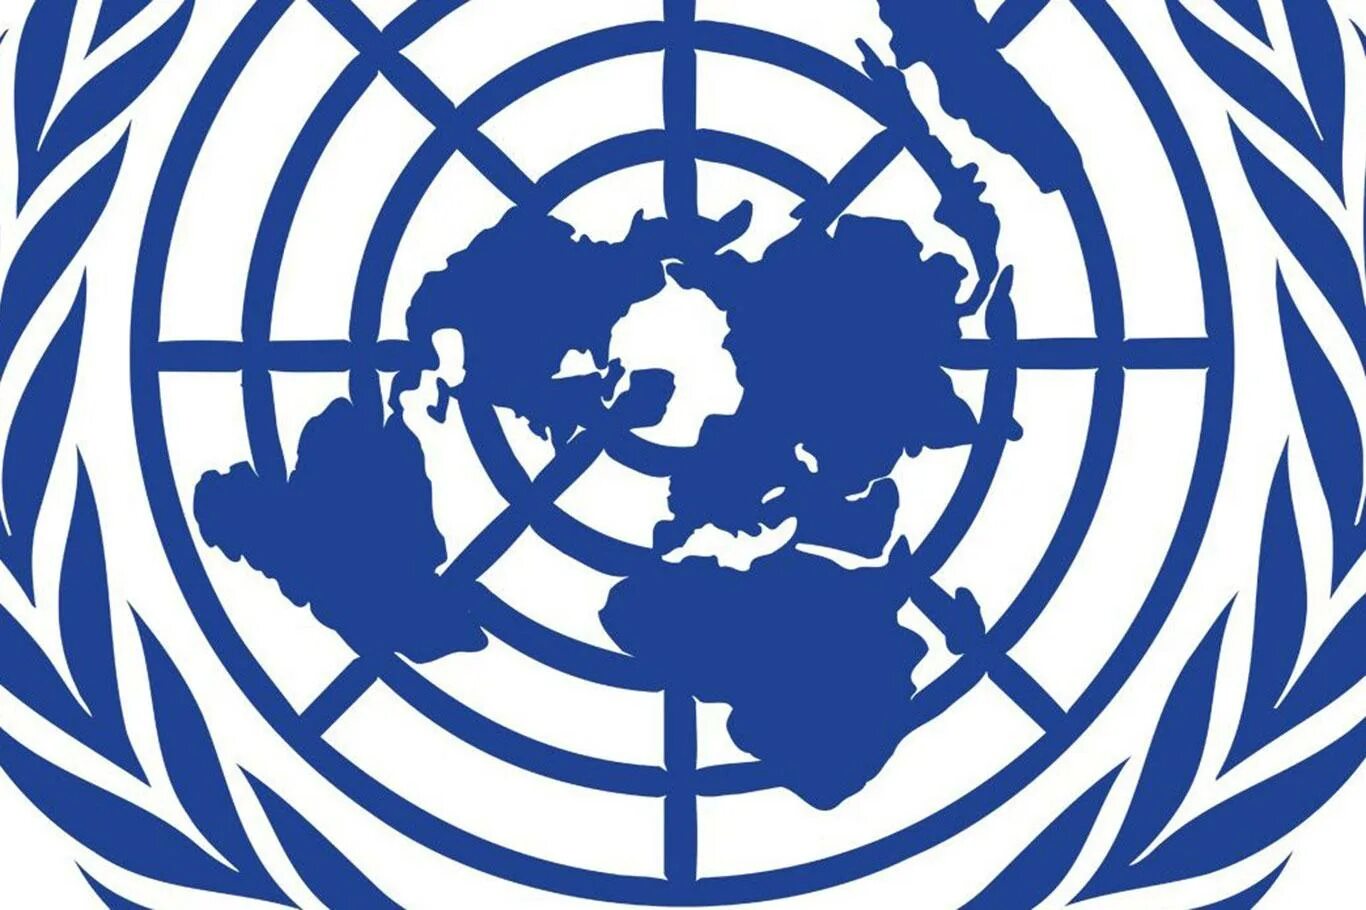 Человек из оон. Эмблема ООН. Совет безопасности ООН эмблема. Прав человека ООН. Международная Хельсинкская Федерация по правам человека.